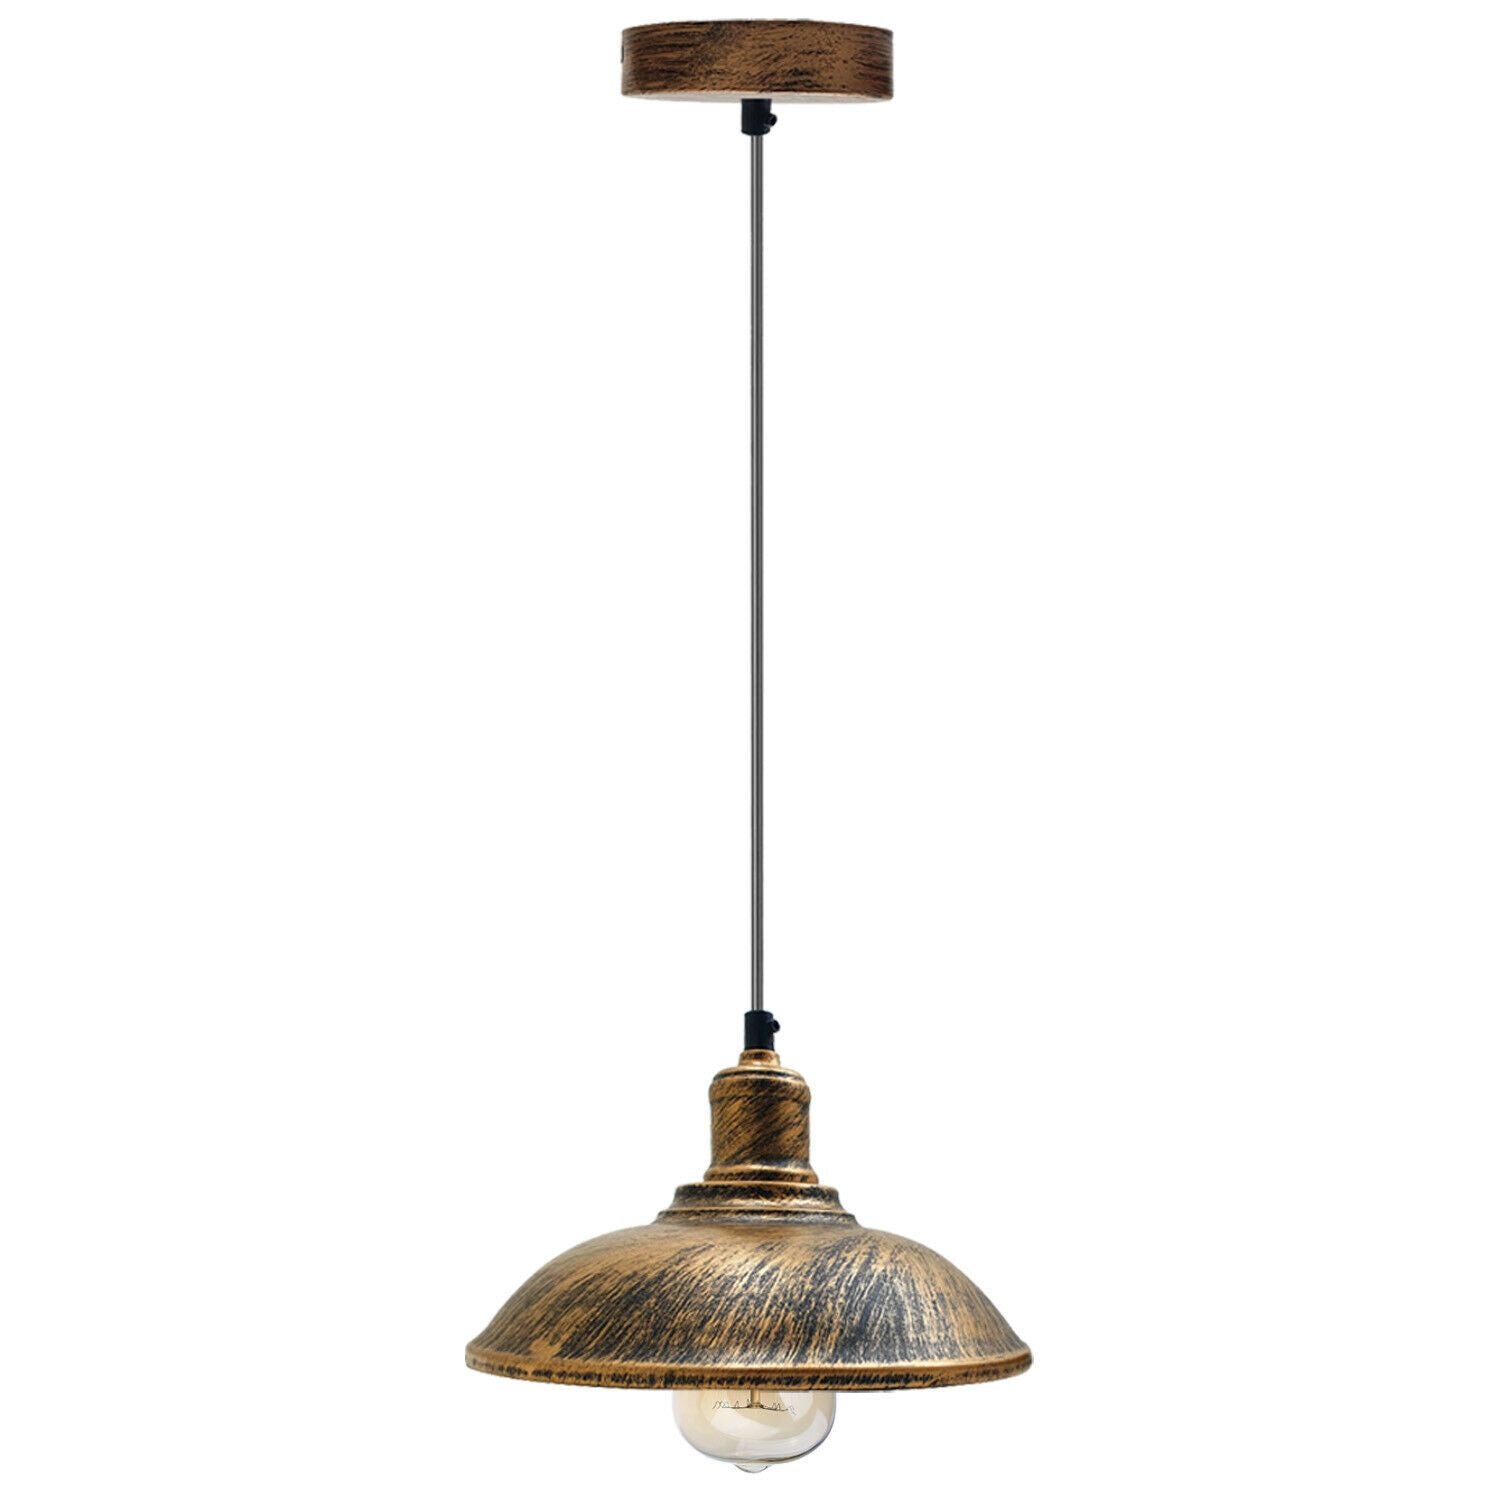 Vintage Pendant Light Shade Metal Lamp Ceiling Lights Brushed Copper~1884 - LEDSone UK Ltd